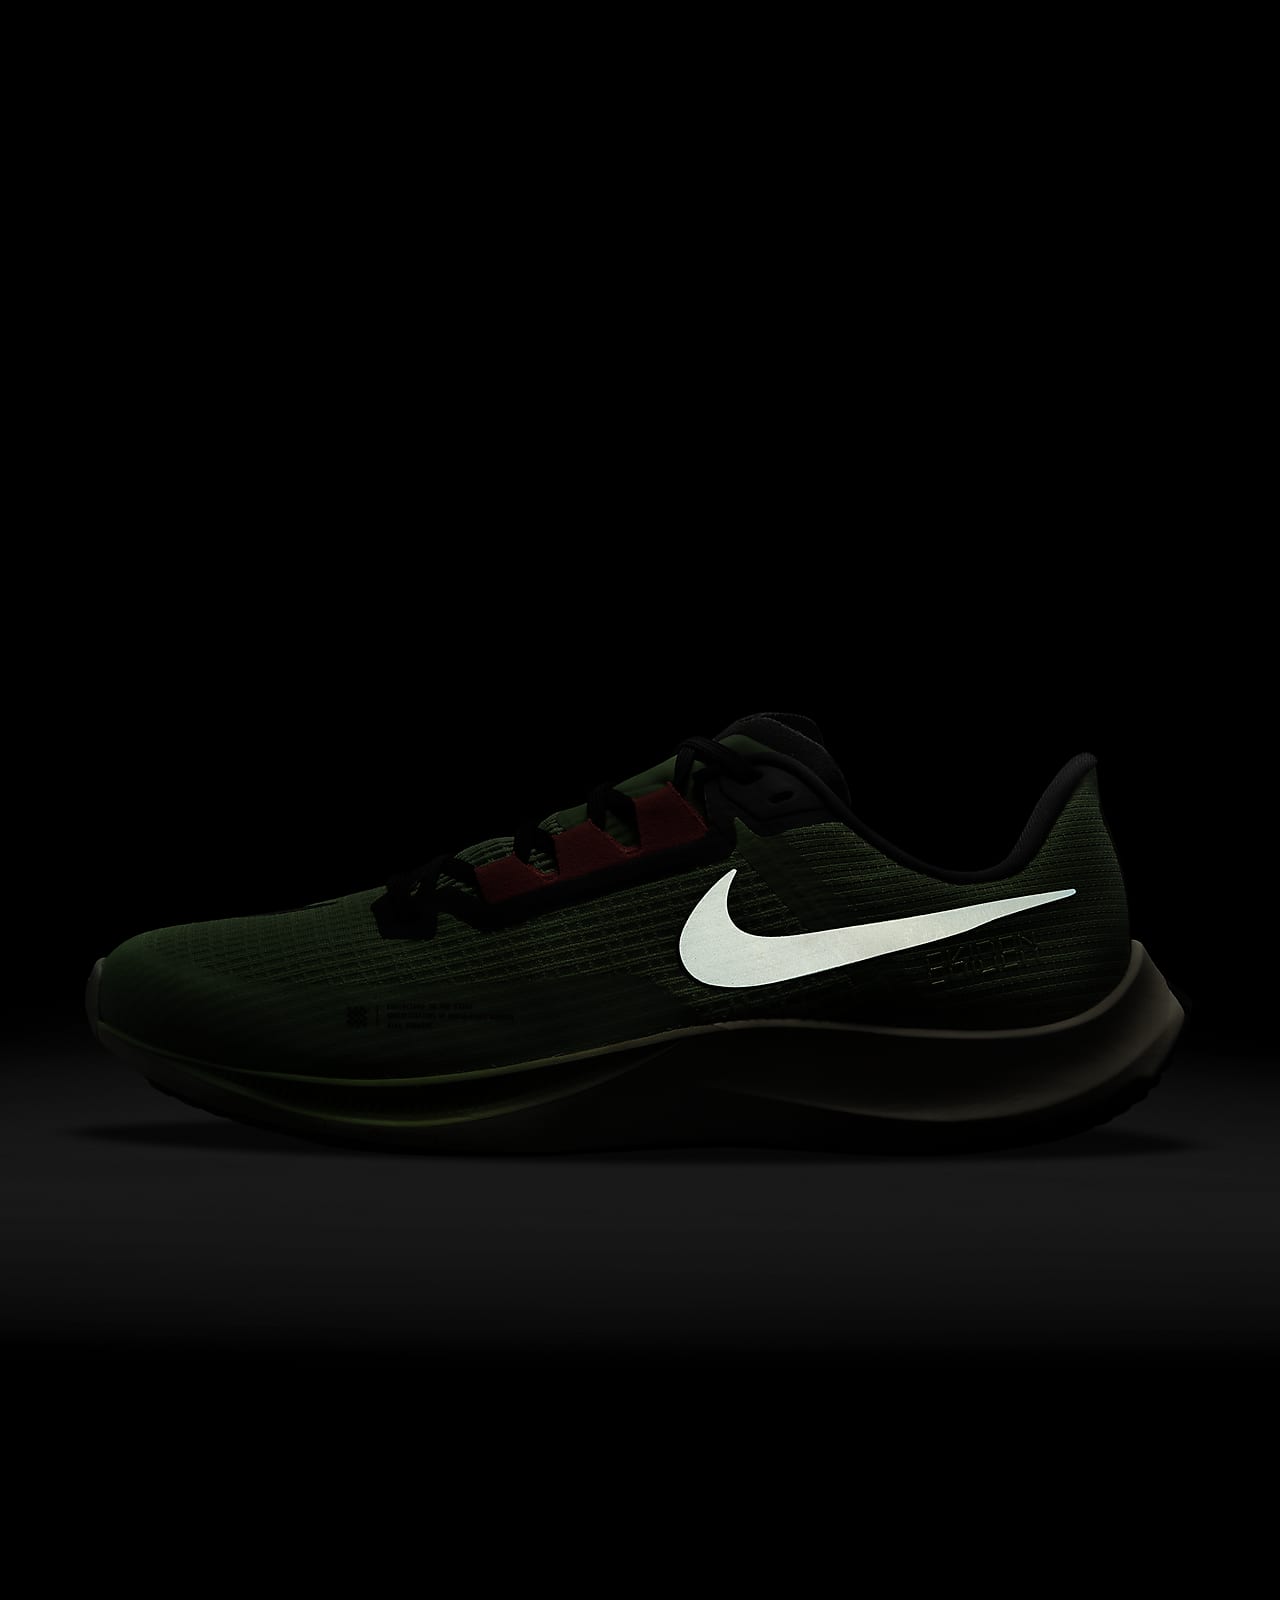 lo hizo Guerrero Accesible Nike Air Zoom Rival Fly 3 Zapatillas de competición para asfalto - Hombre.  Nike ES